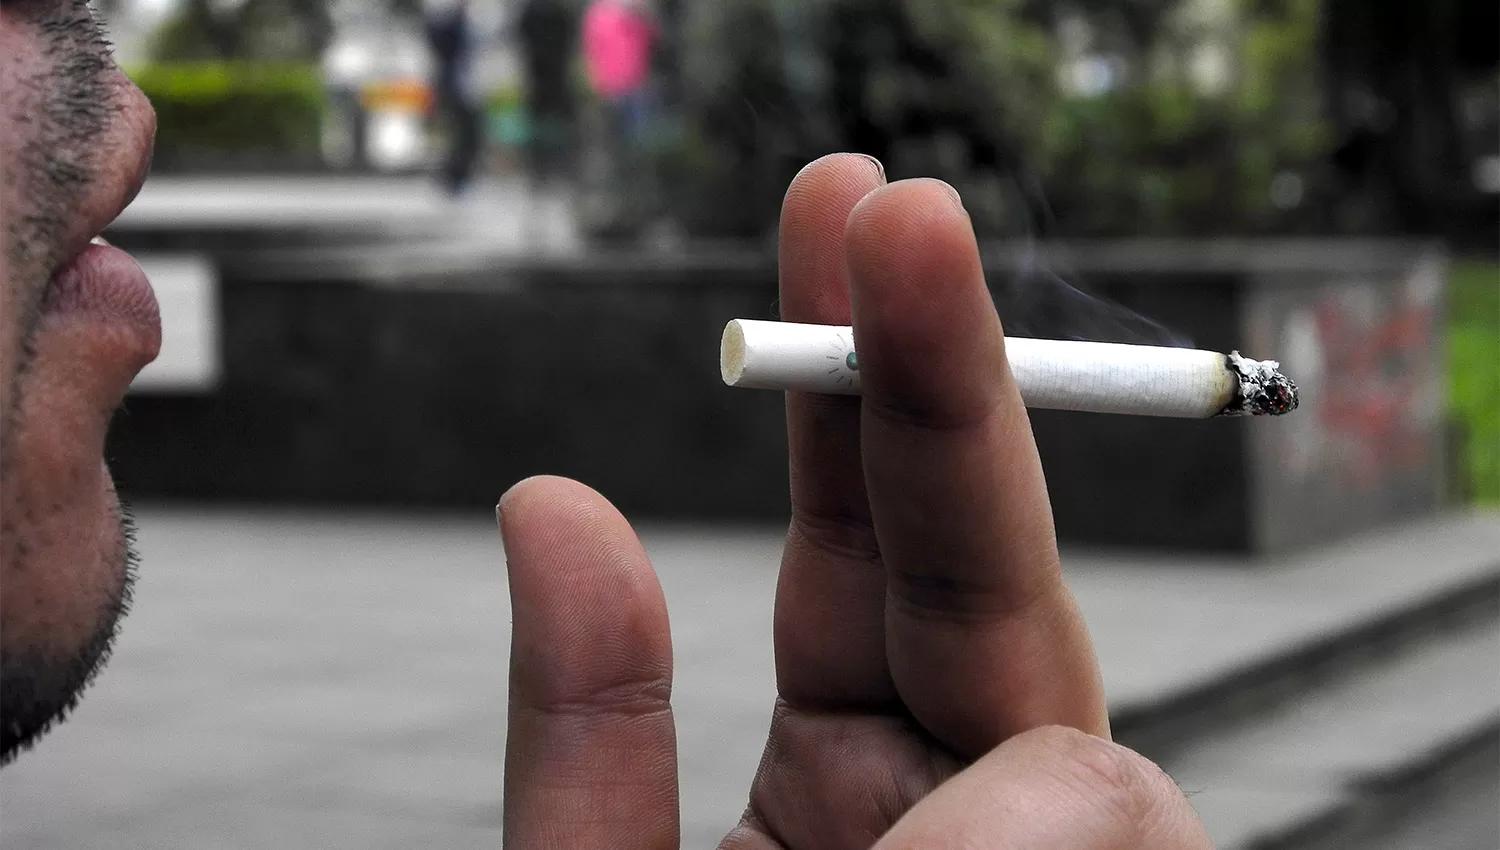 INCREMENTO. La mayoría de los paquetes de cigarrillos alcanzarán al menos los $ 50. ARCHIVO LA GACETA / FOTO DE JOSÉ NUNO